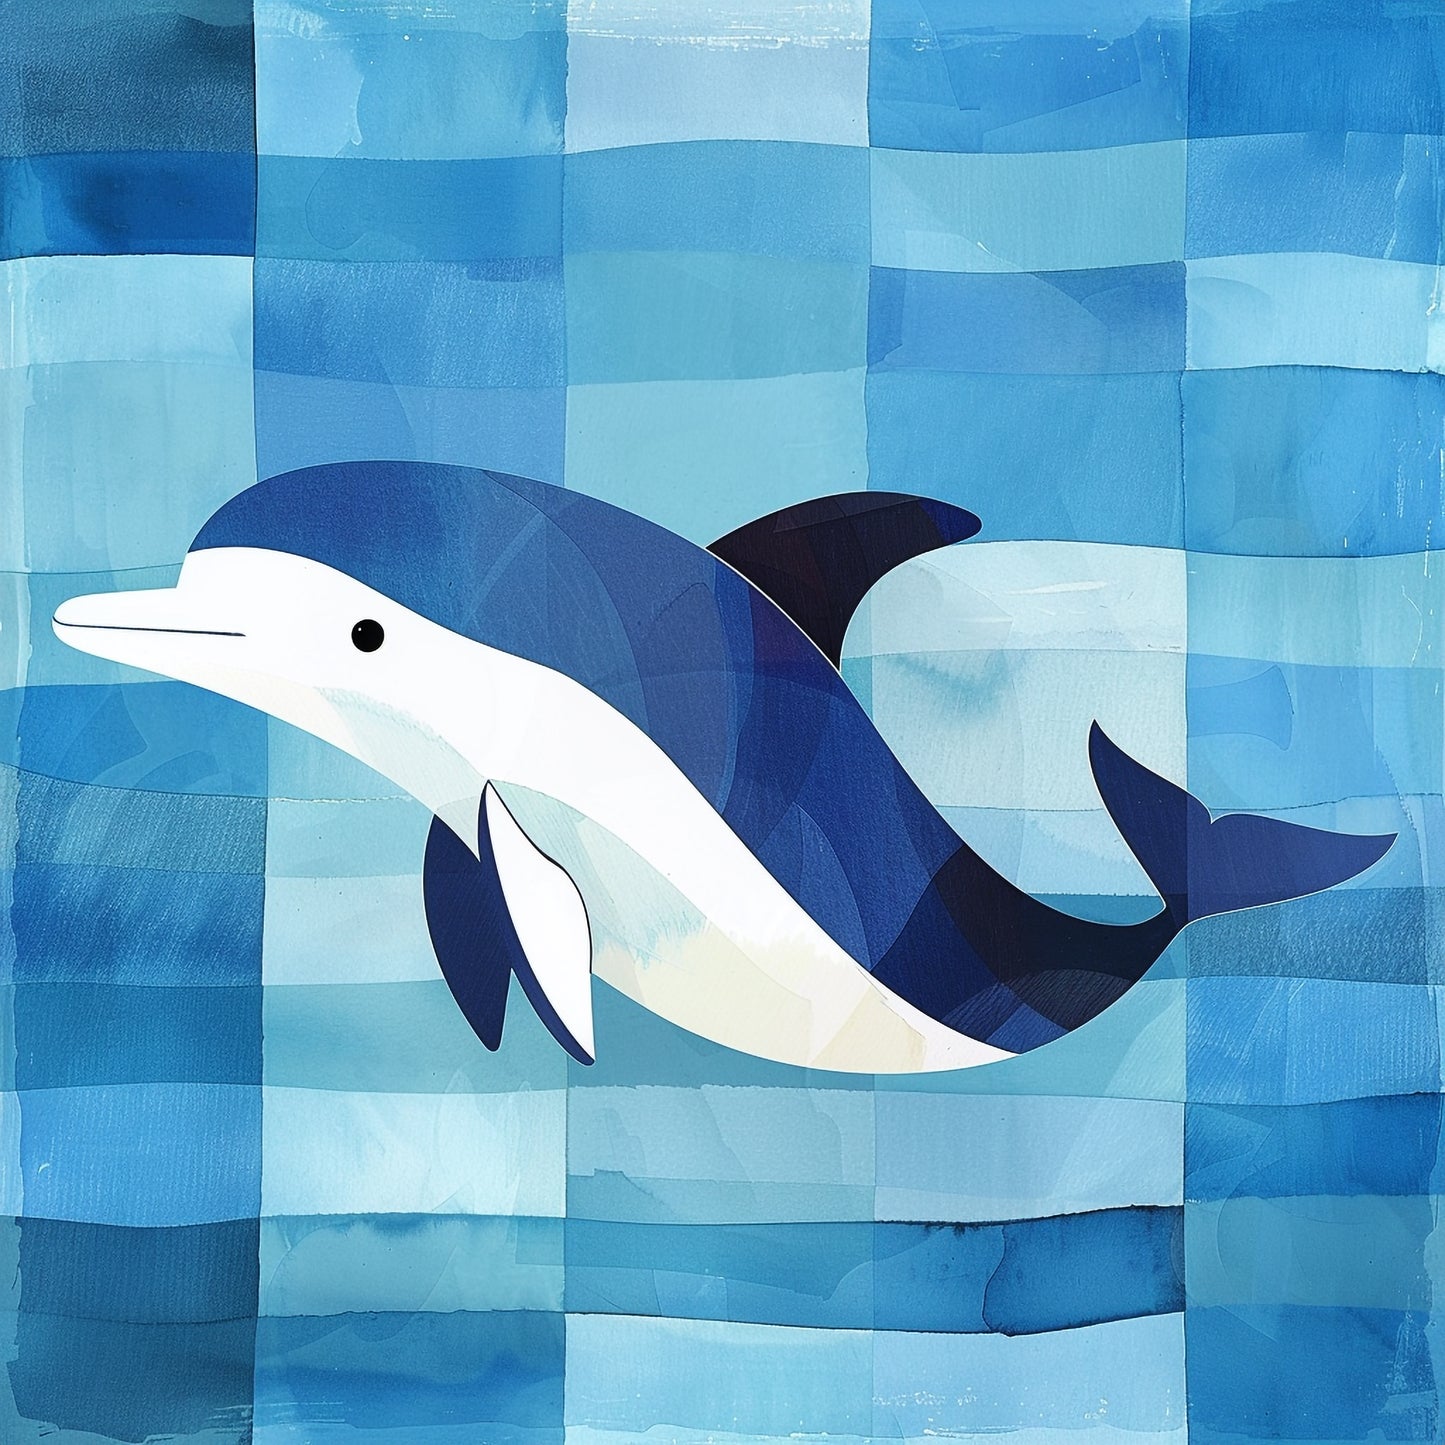 Happy Dolphin Swimming Joyfully in a Stylized Blue Ocean